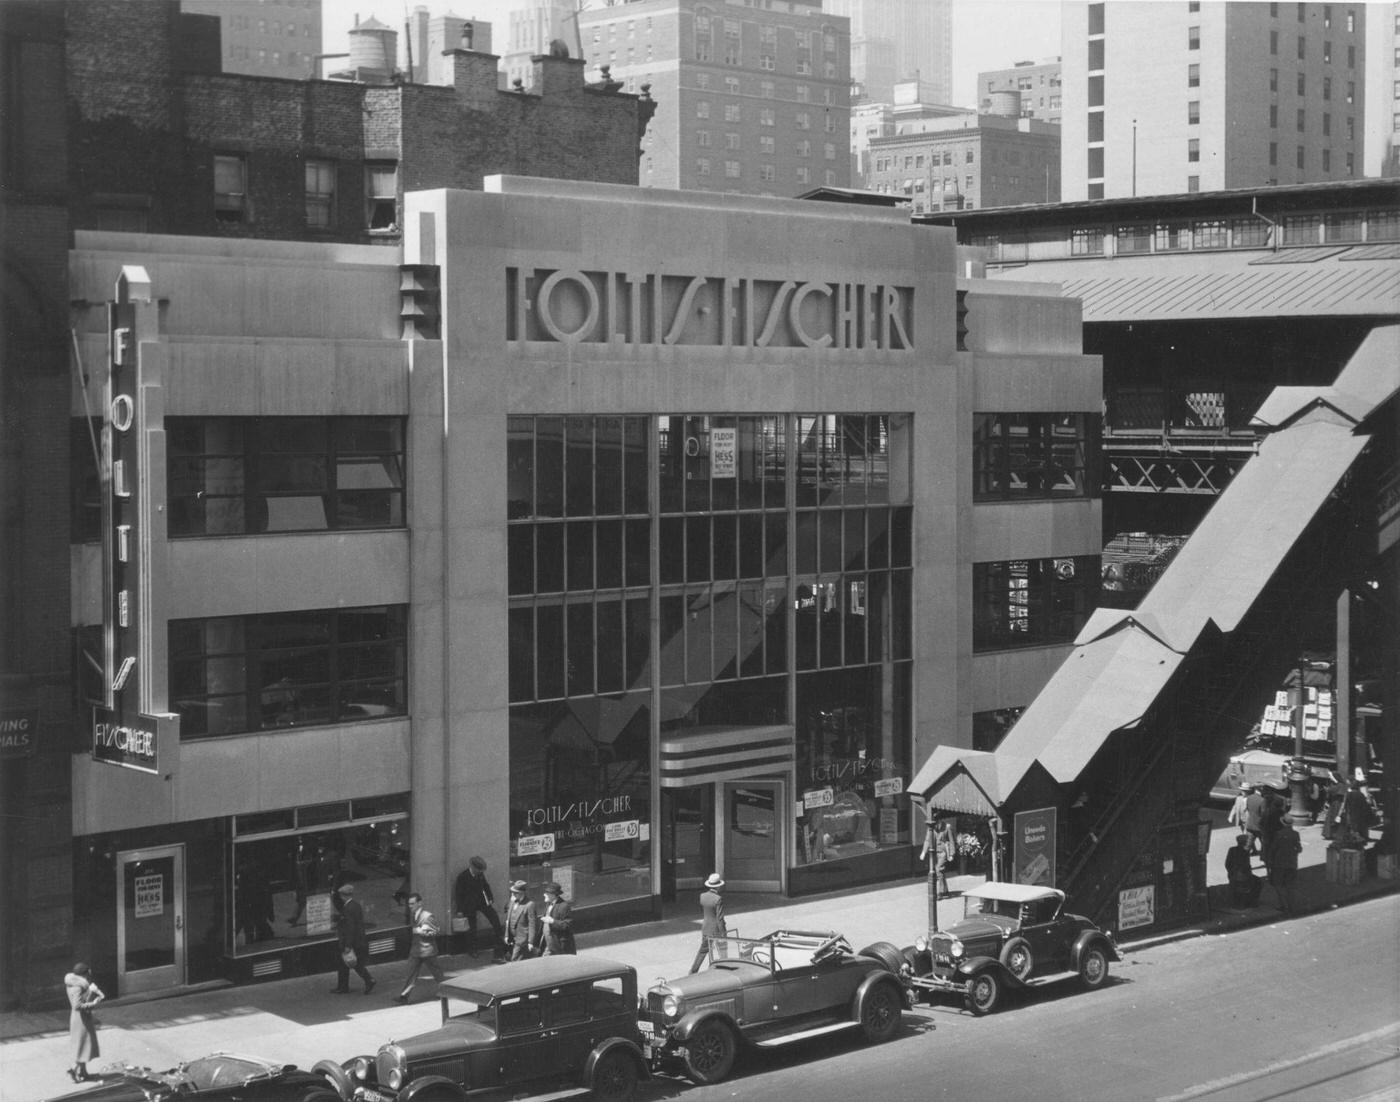 Foltis-Fischer Restaurant, 42Nd Street And Third Avenue, Manhattan, 1929.